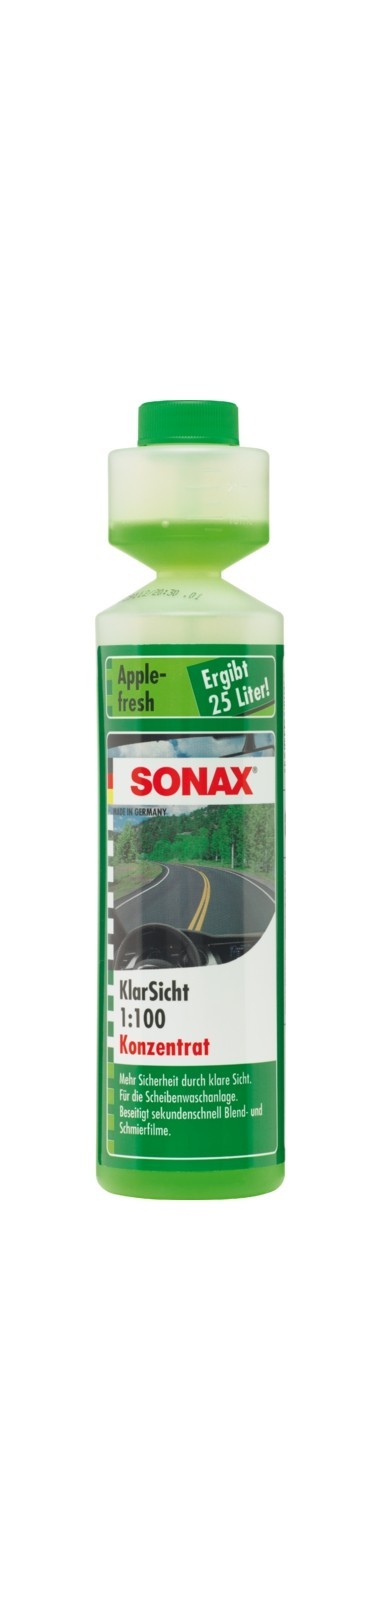 SONAX KlarSicht 1:100 Konzentrat Apple-fresh (250 ml), Art.-Nr. 03721410